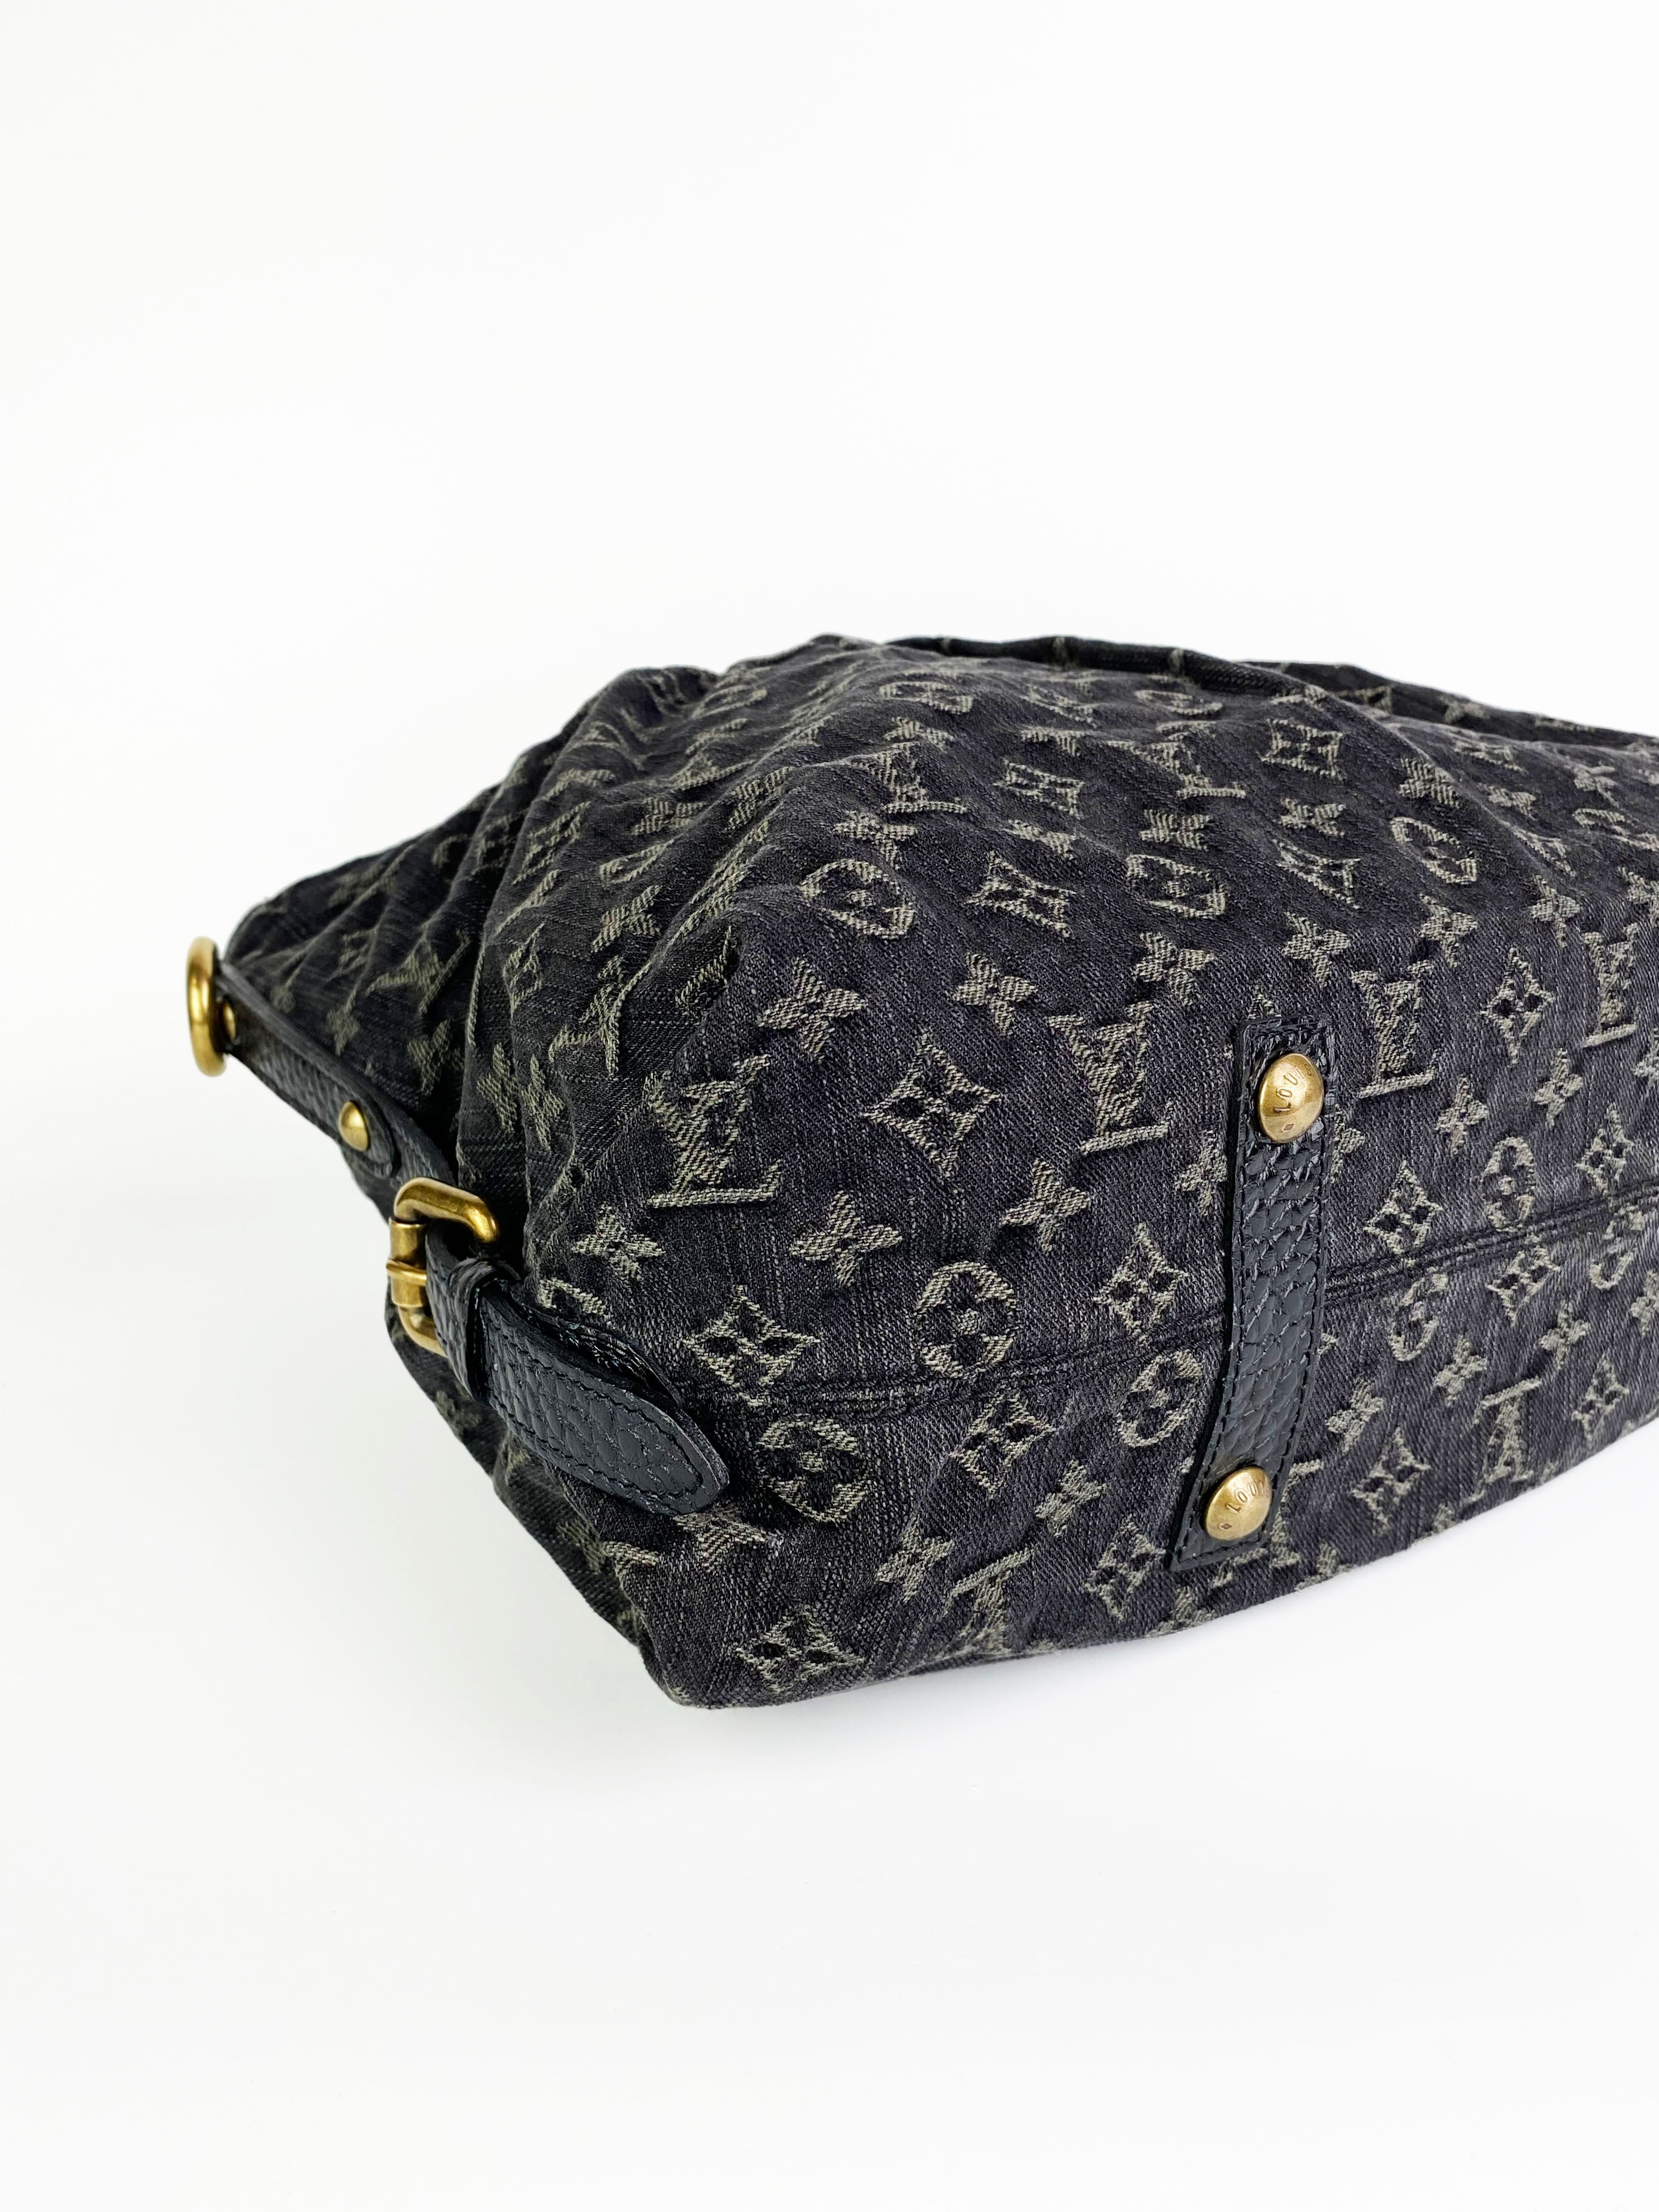 Louis Vuitton Vintage Black Denim Tote Bag